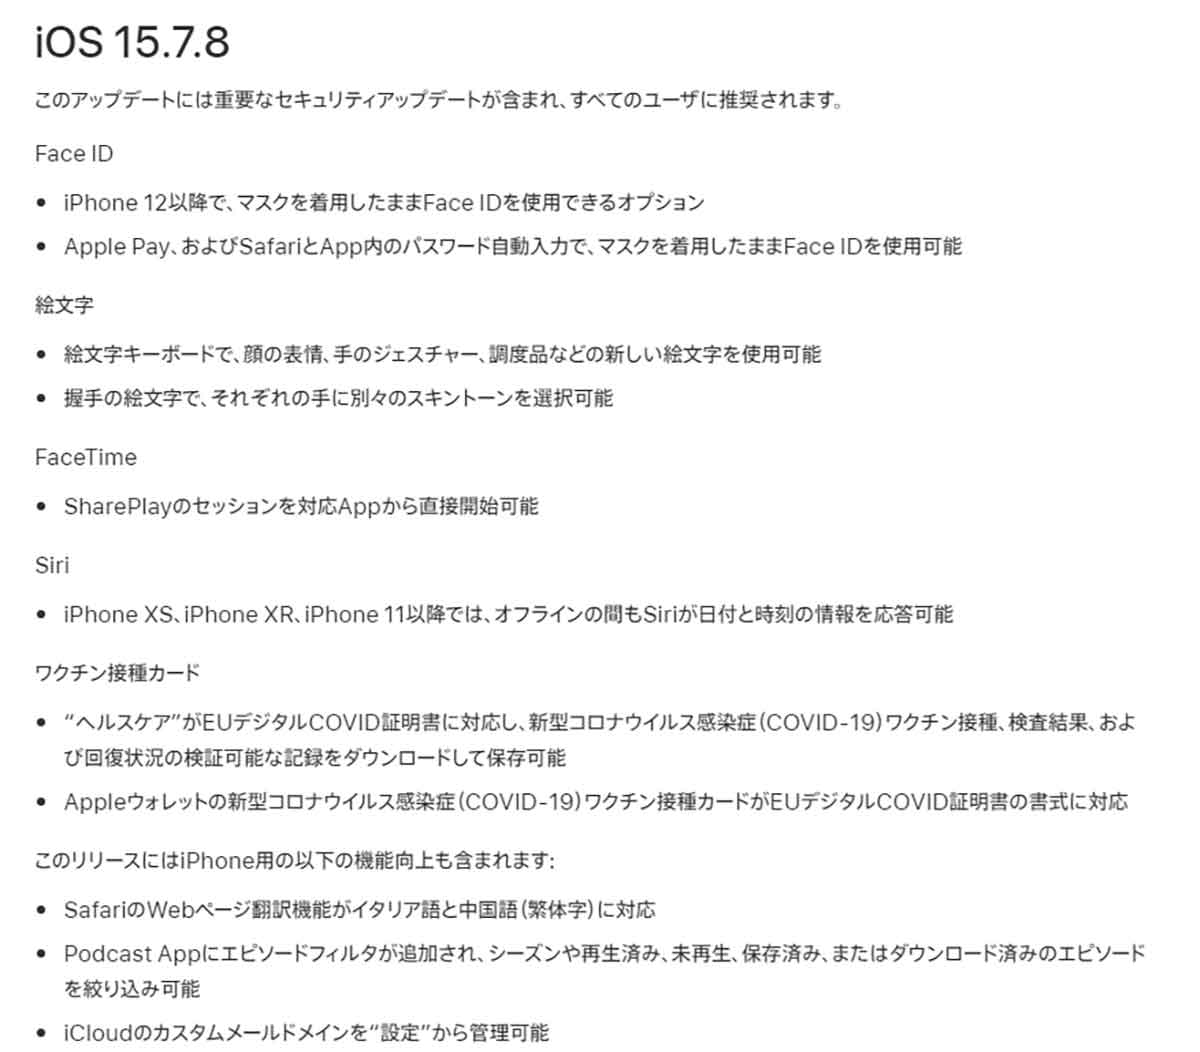 iOS 15.7.8の主なアップデート内容